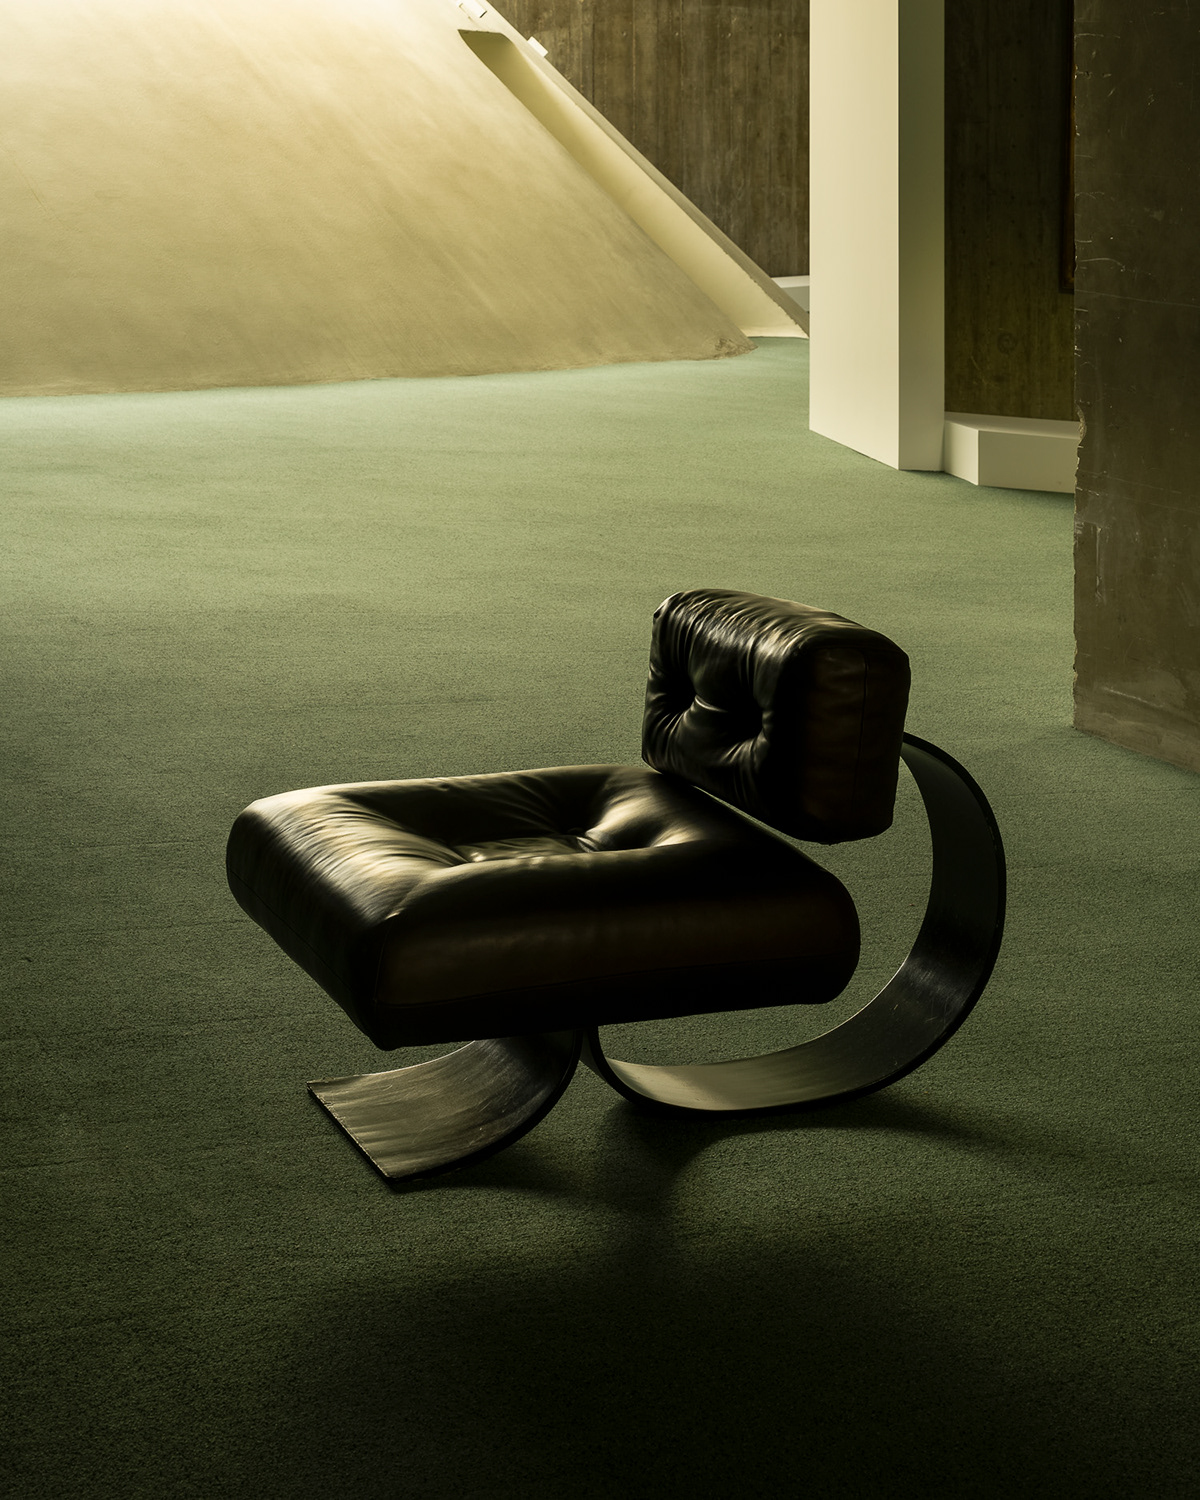 Oscar Niemeyer modernist architecture modernism architecture concrete architecture Interior Photography furniture